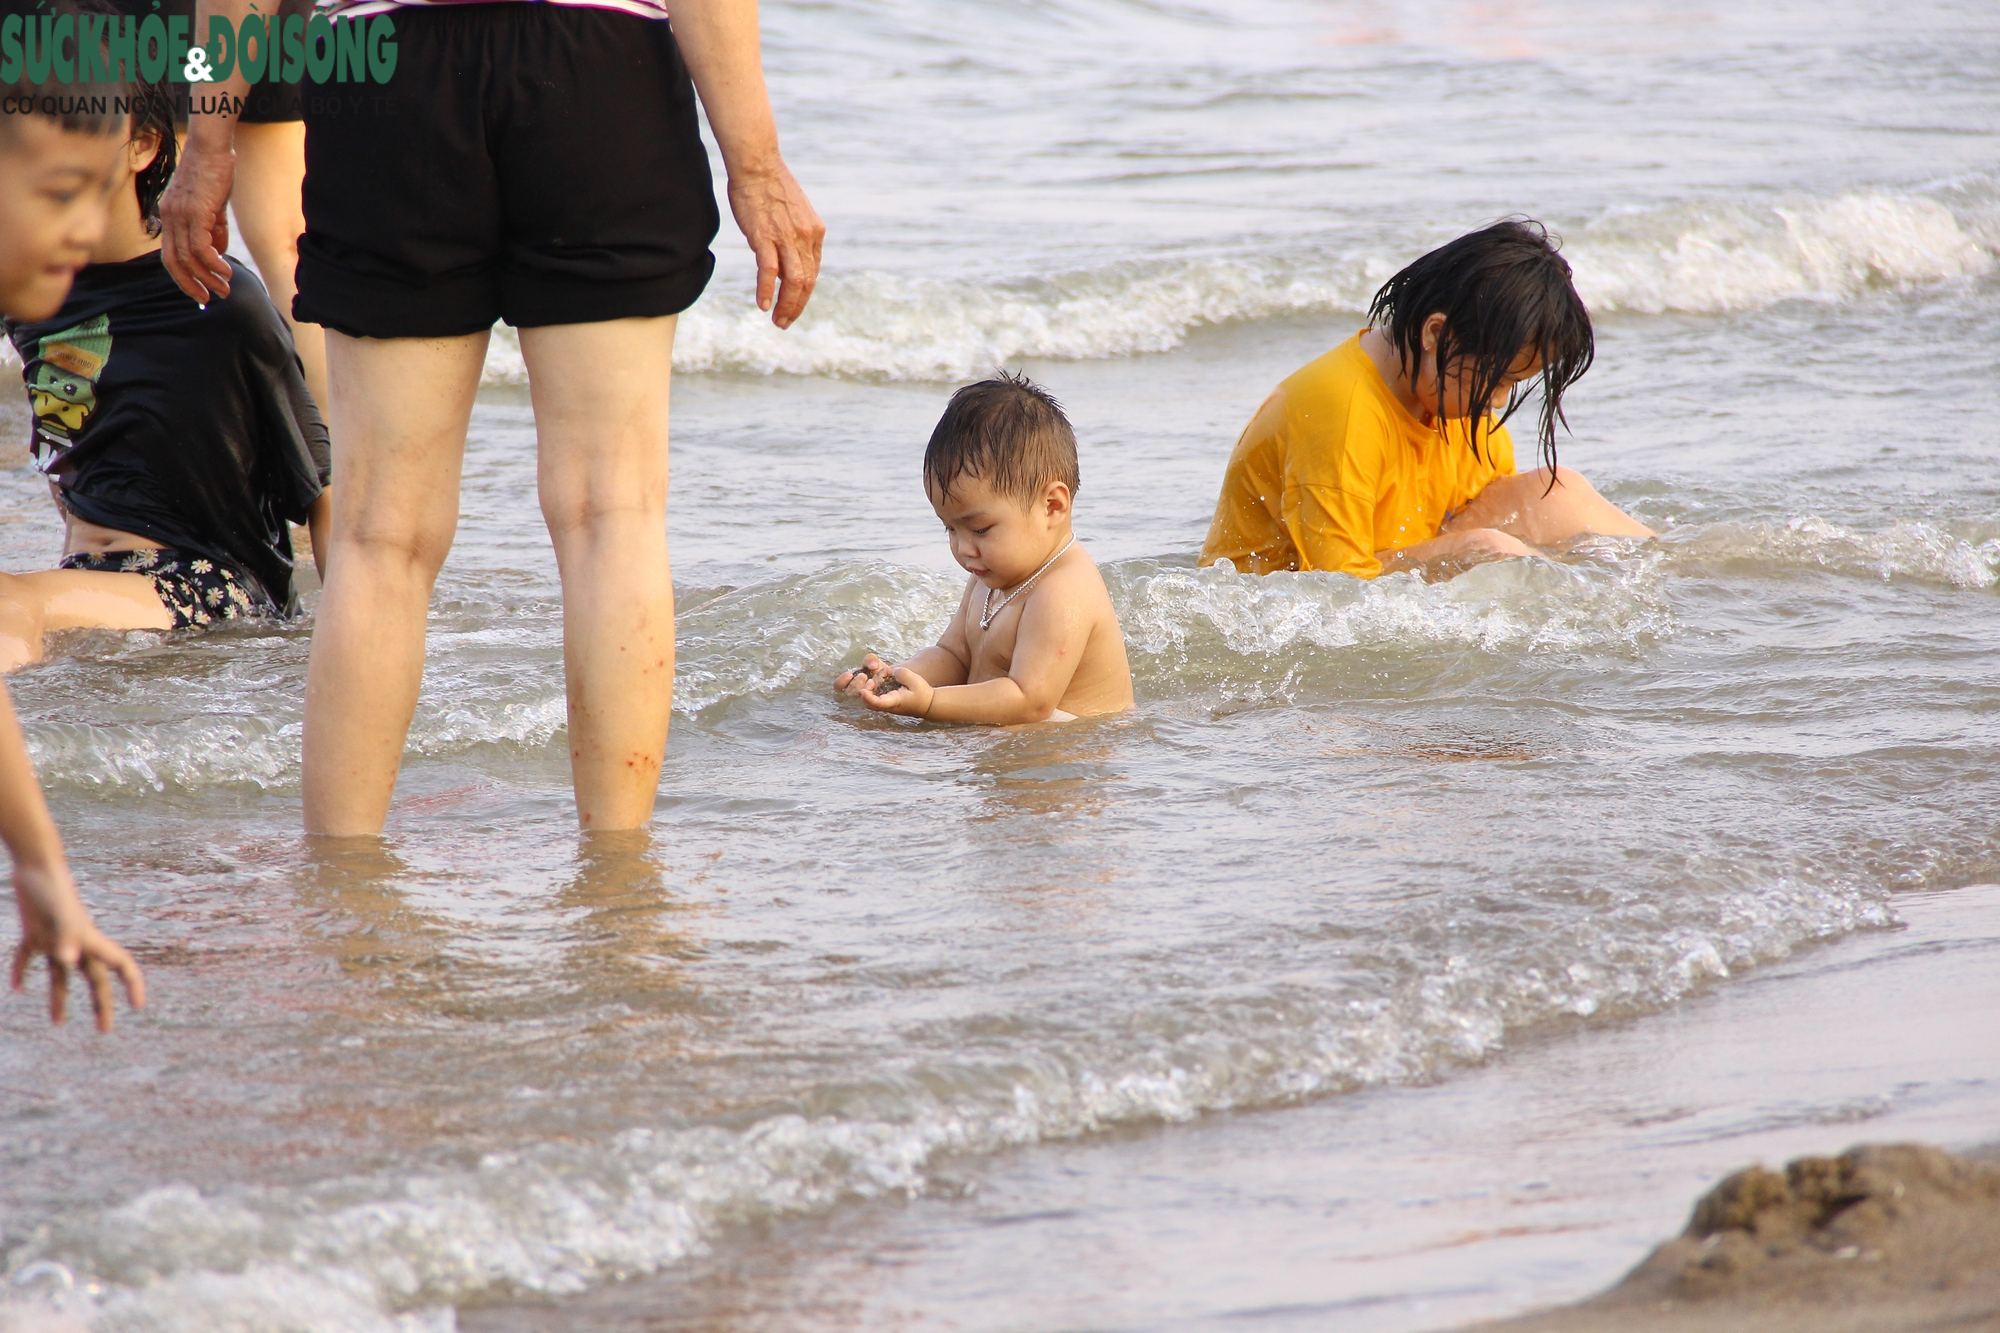 Bãi biển Sầm Sơn chật kín người dịp cuối tuần - Ảnh 10.